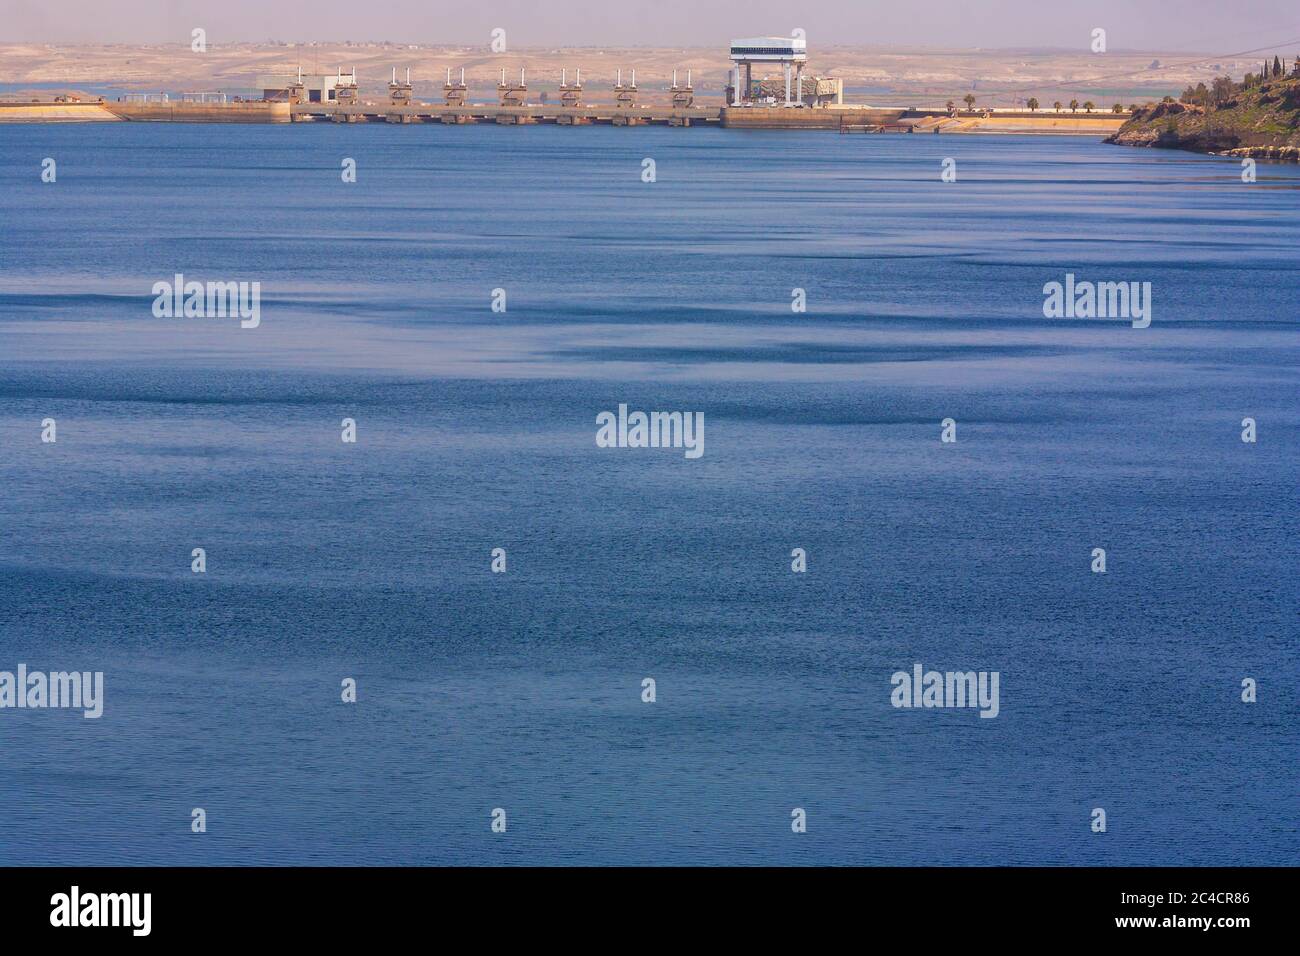 Euphrates river, Lake Assad, Syria Stock Photo